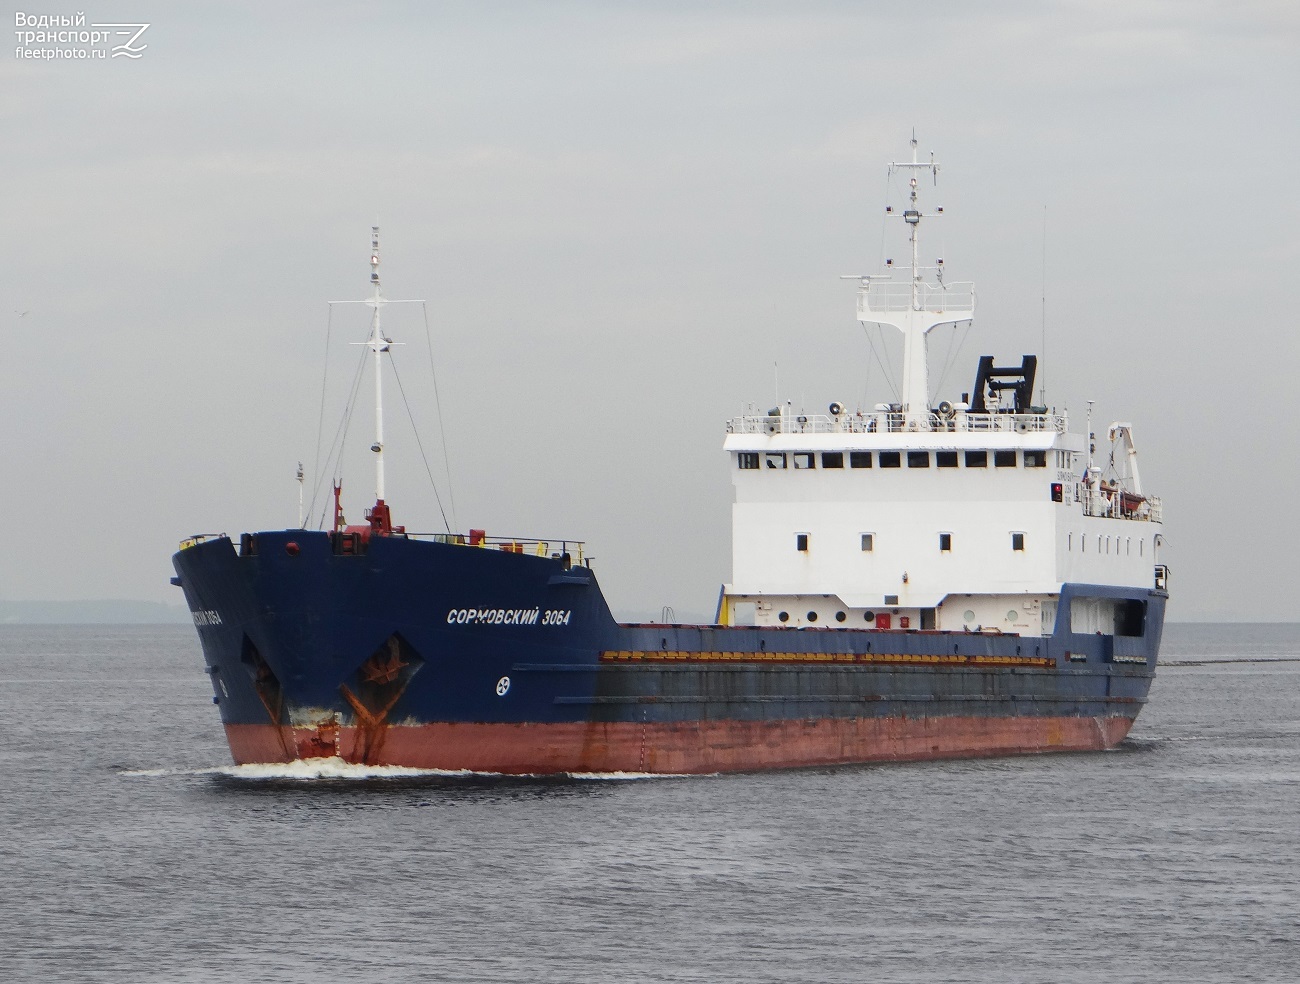 Πόλεμος στην Ουκρανία: Ρωσικό εμπορικό πλοίο χτυπήθηκε από ουκρανικά πυρά – Πληροφορίες ότι είχε αποπλεύσει από ελληνικό λιμάνι